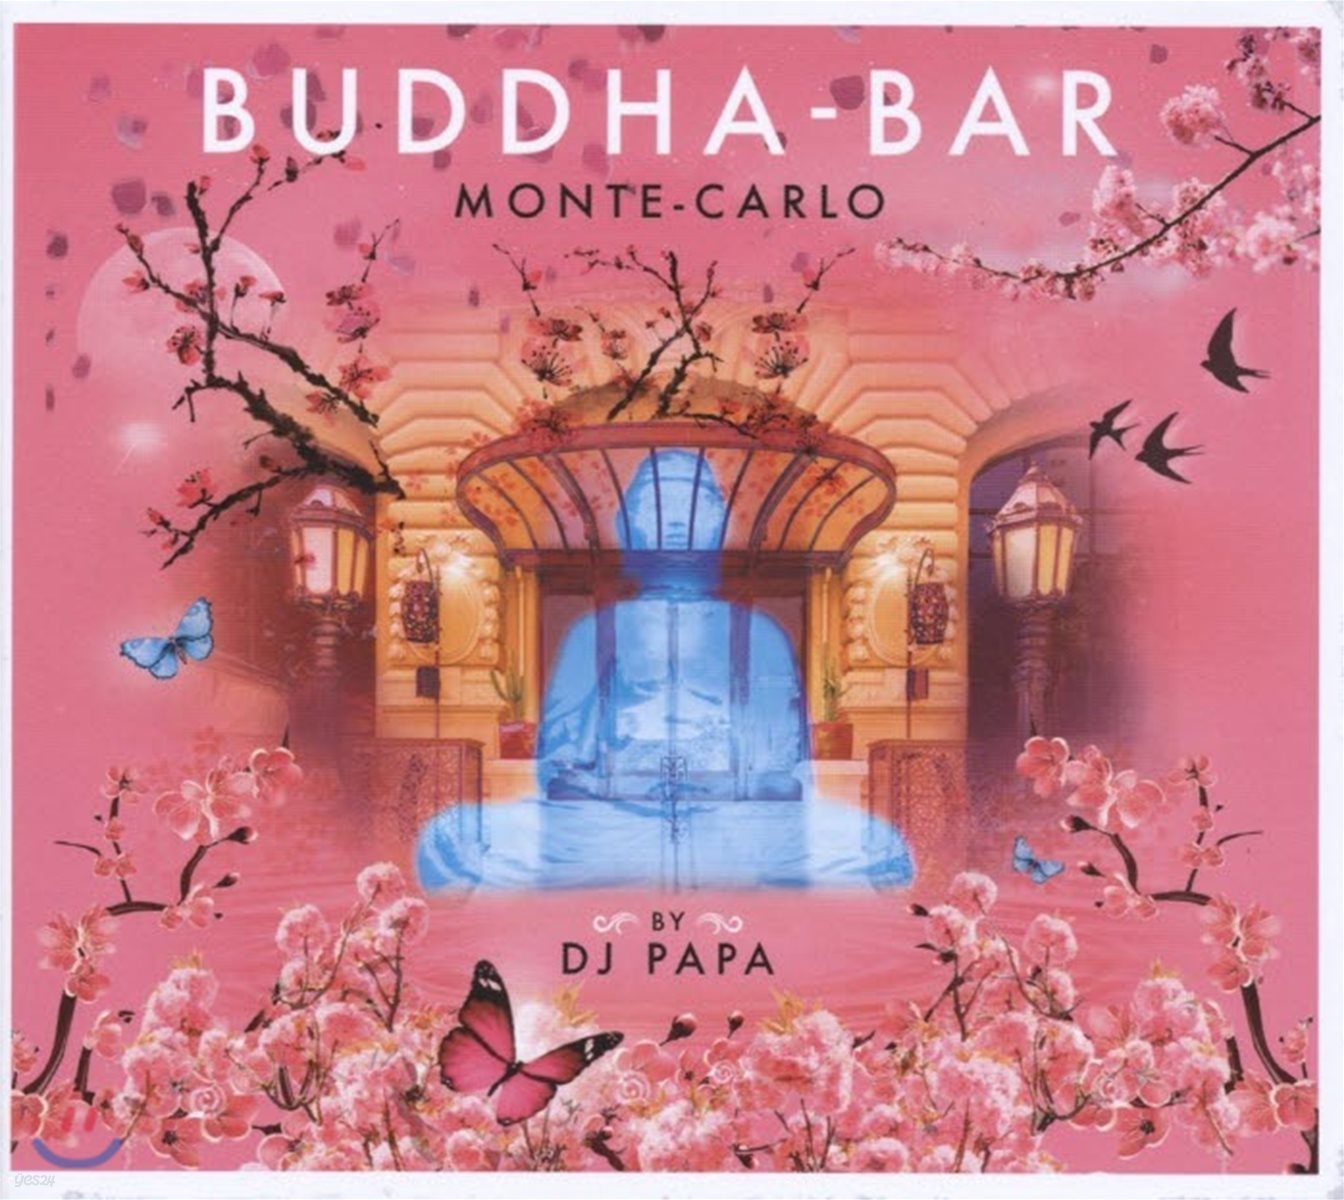 부다바 몬테 카를로 (Buddha-Bar Vol.19: Monte-Carlo Mixed by DJ Papa 디제이 파파)